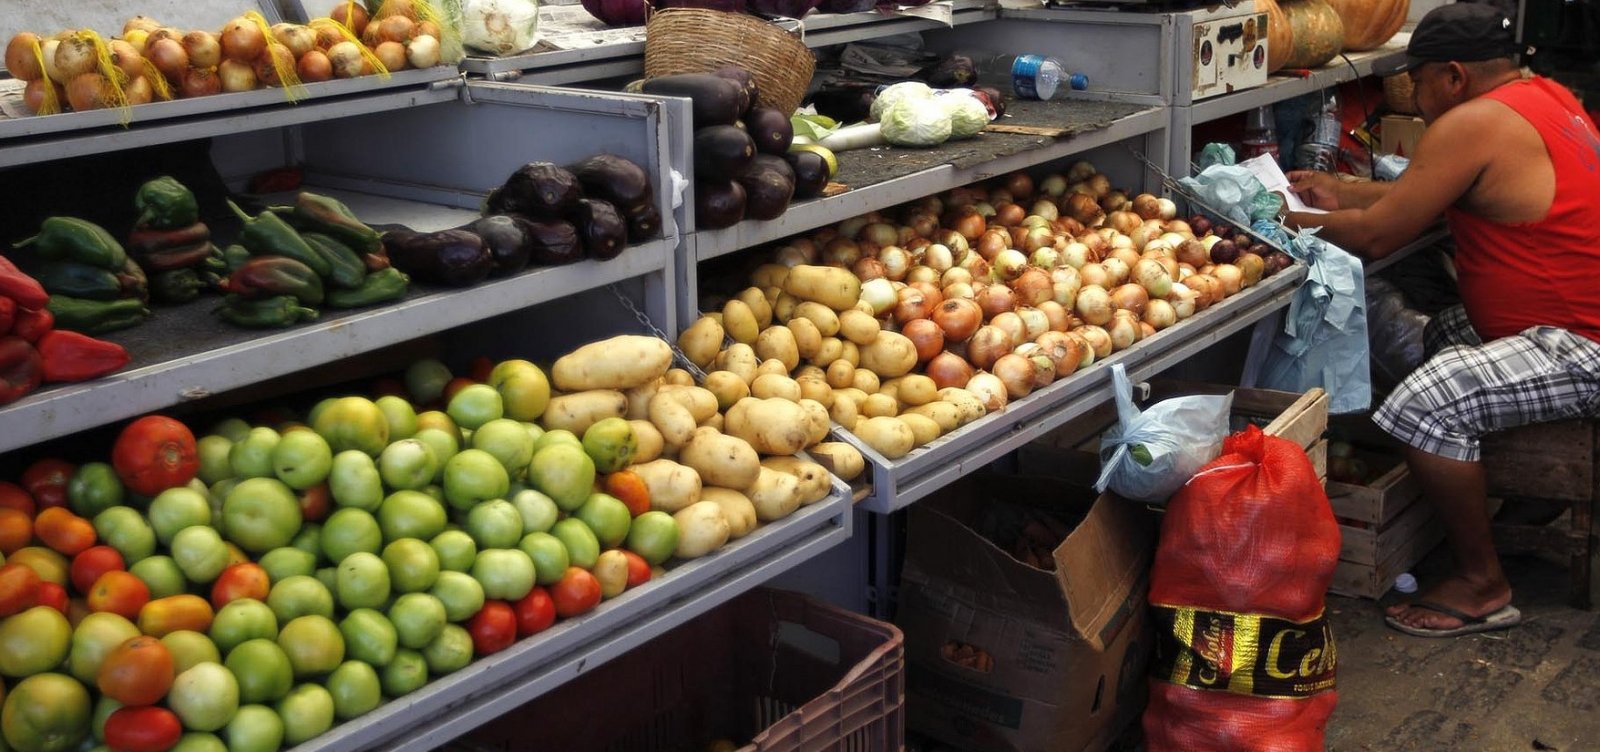 Tomate, batata, banana e carne registram maiores quedas na cesta básica em julho